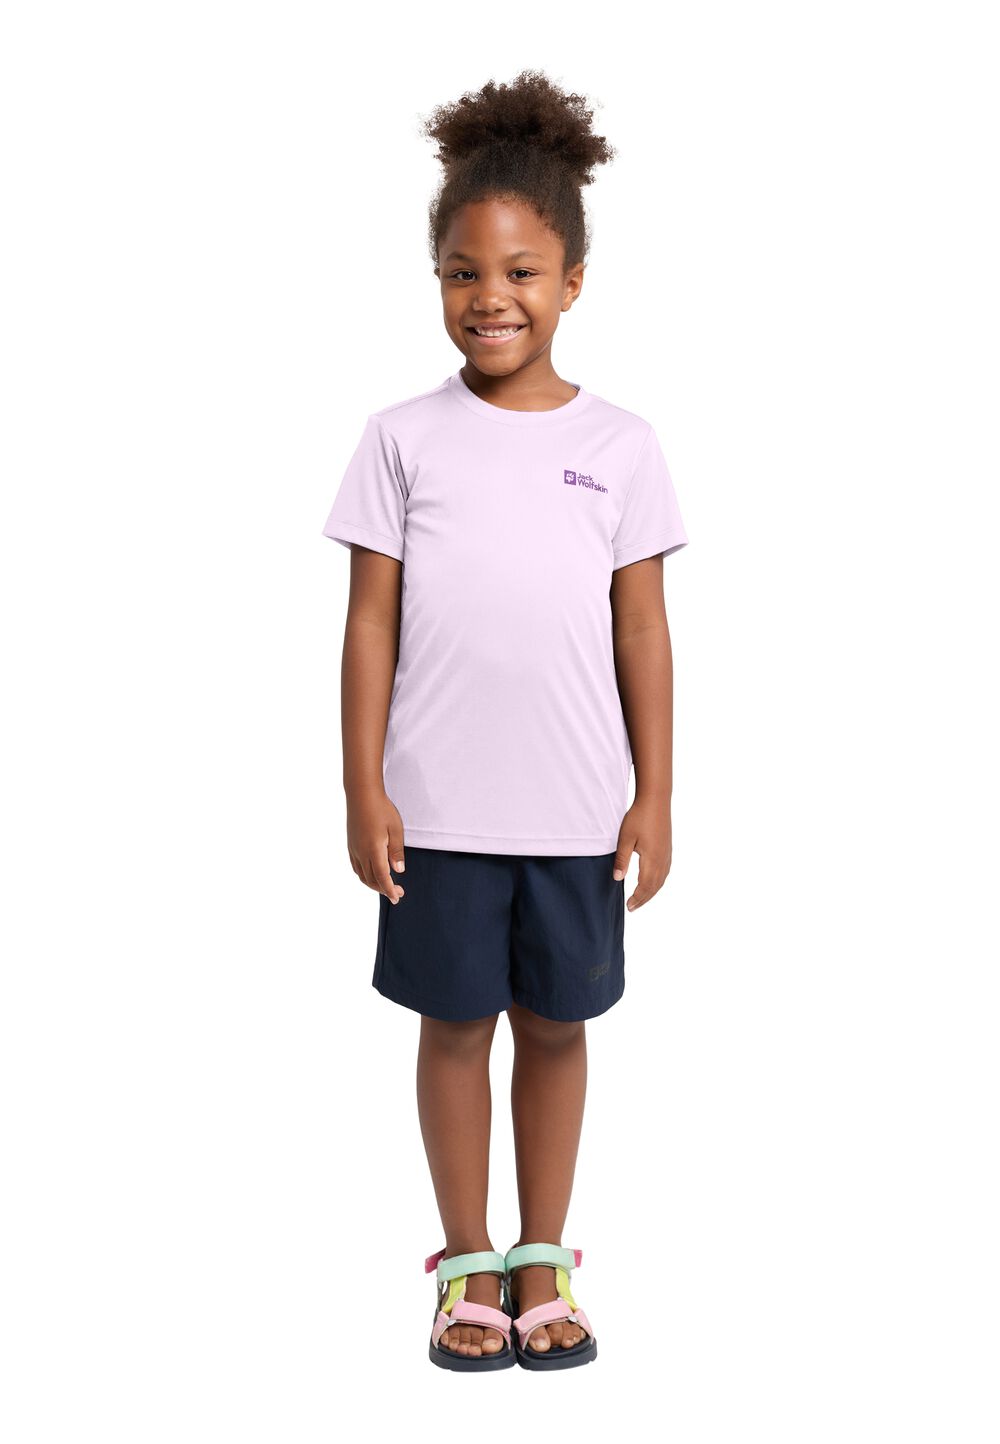 Jack Wolfskin Active Solid T-Shirt Kids Functioneel shirt Kinderen 152 pale lavendar pale lavendar